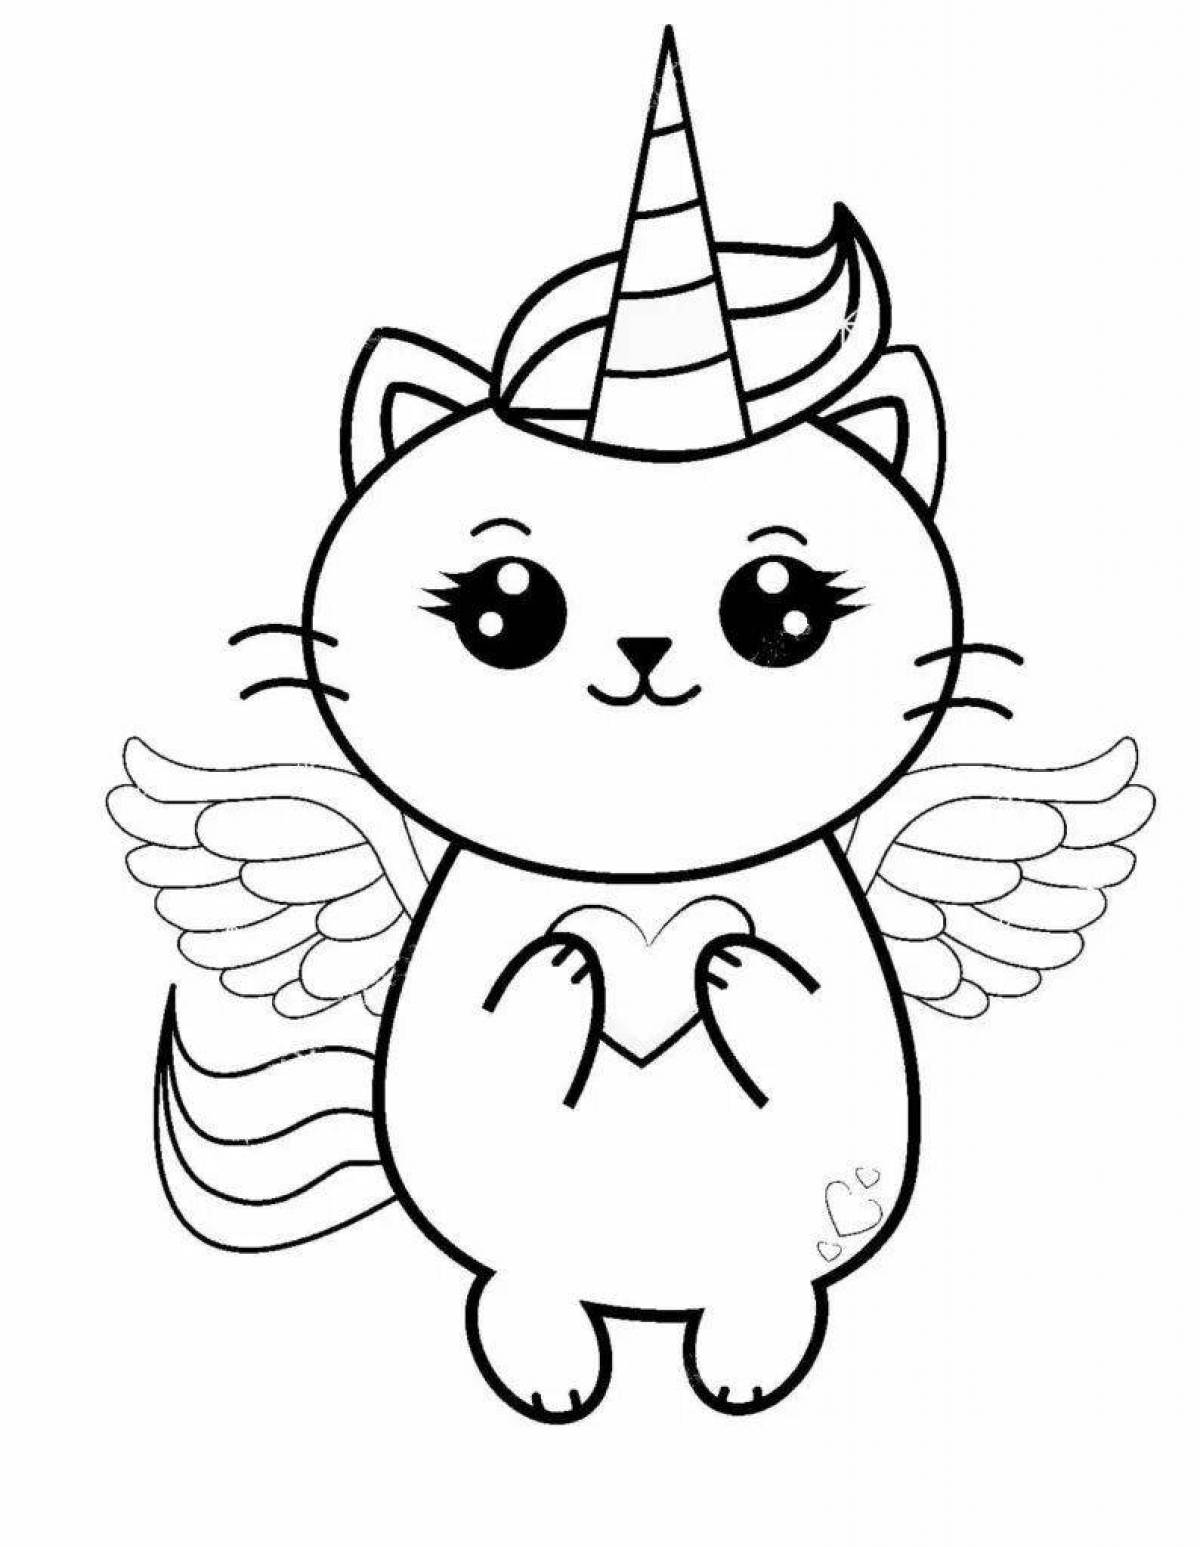 Unicorn cat #6